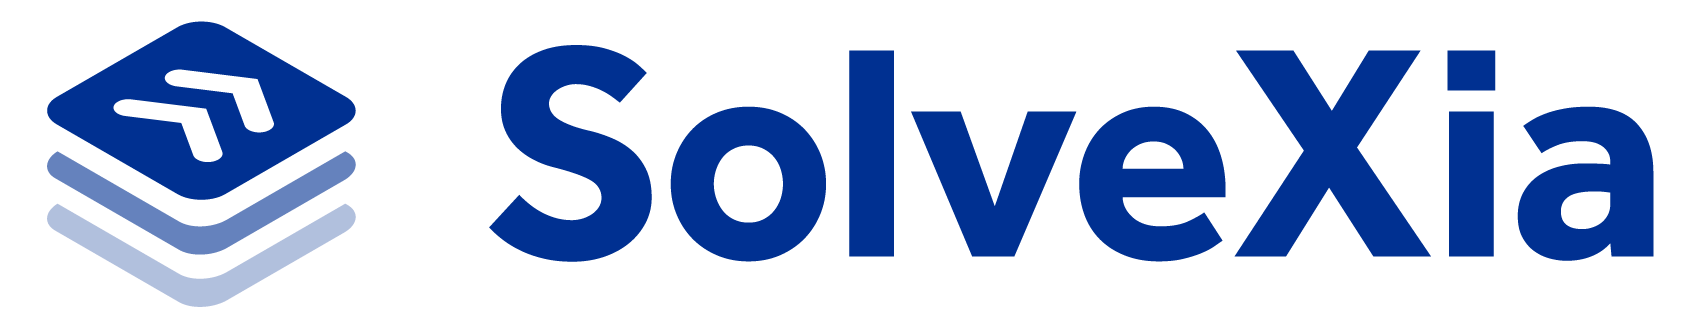 SolveXia Marketplace logo